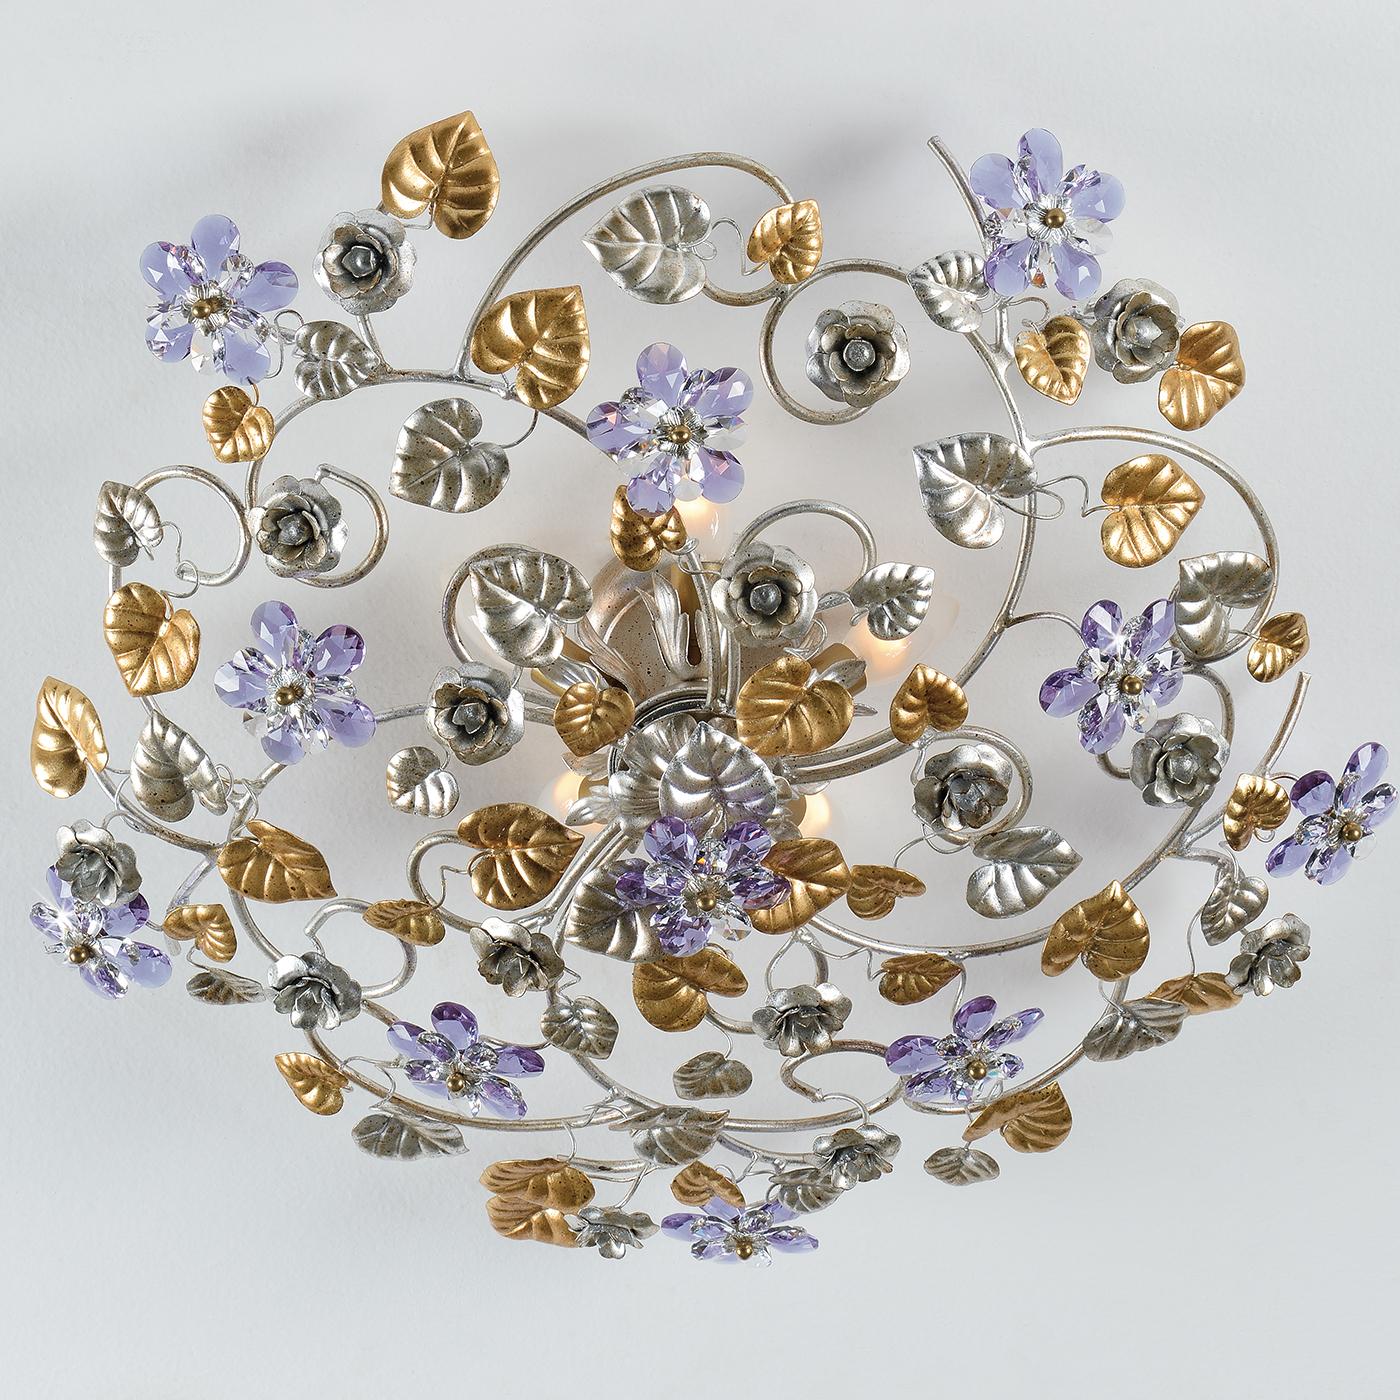 Délicieusement élaborée et ornée, cette étonnante lampe de plafond à 5 lumières est magnifiquement réalisée en métal et décorée de splendides détails en argent antique et feuilles d'or. Les fleurs exquises en cristal bicolore lilas complètent